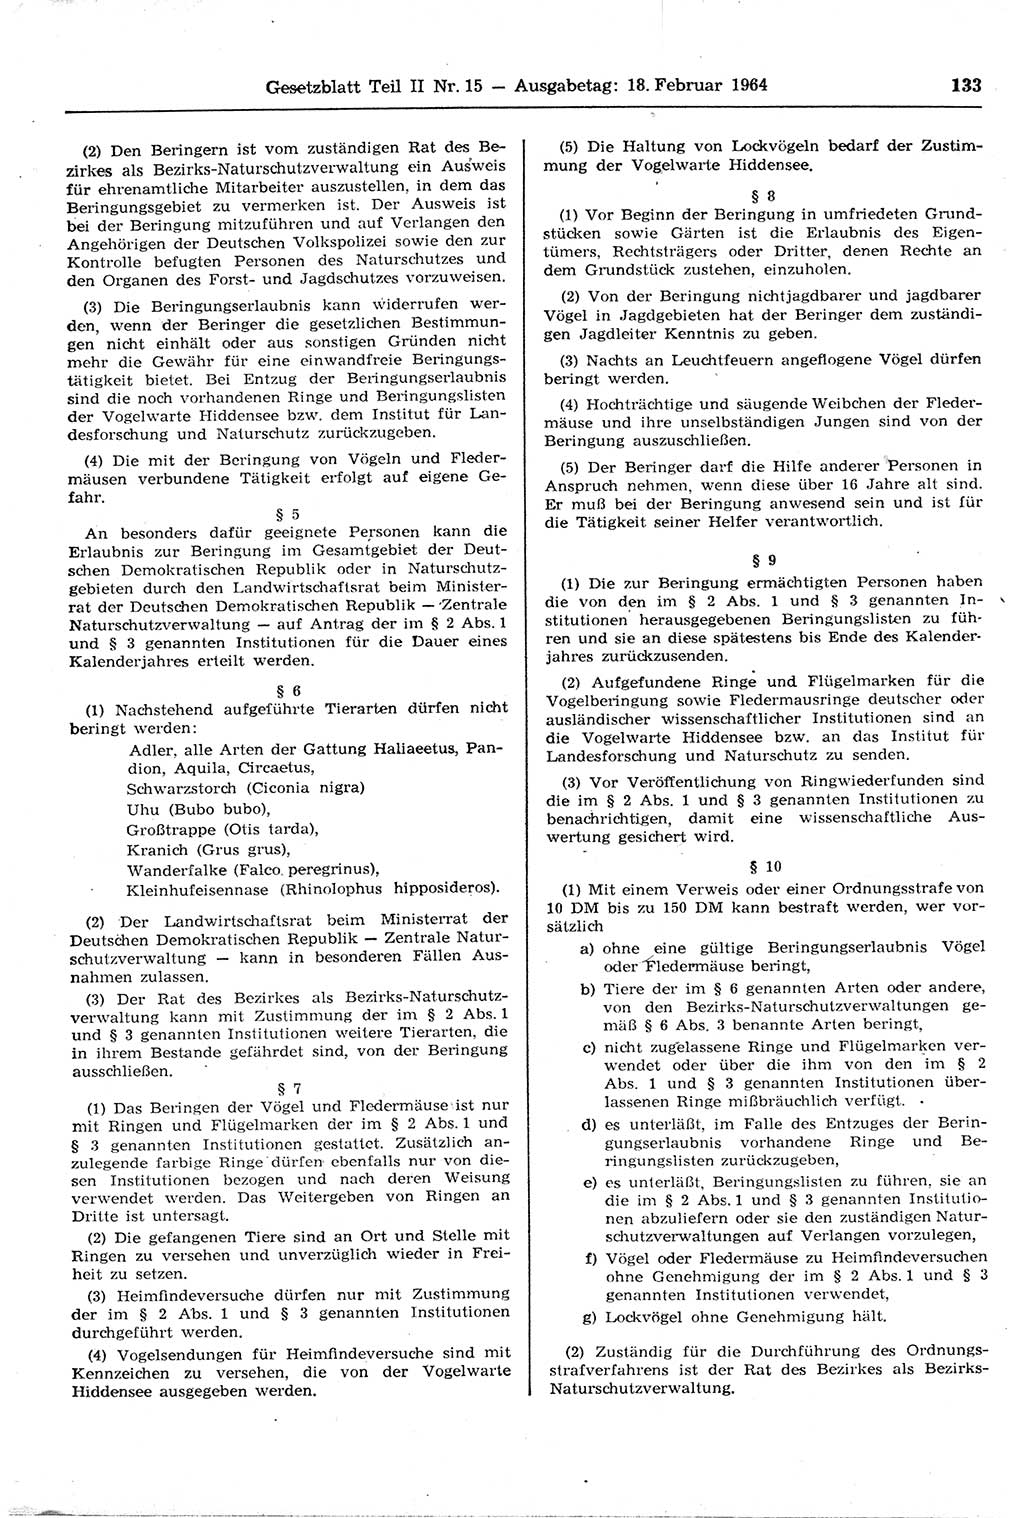 Gesetzblatt (GBl.) der Deutschen Demokratischen Republik (DDR) Teil ⅠⅠ 1964, Seite 133 (GBl. DDR ⅠⅠ 1964, S. 133)